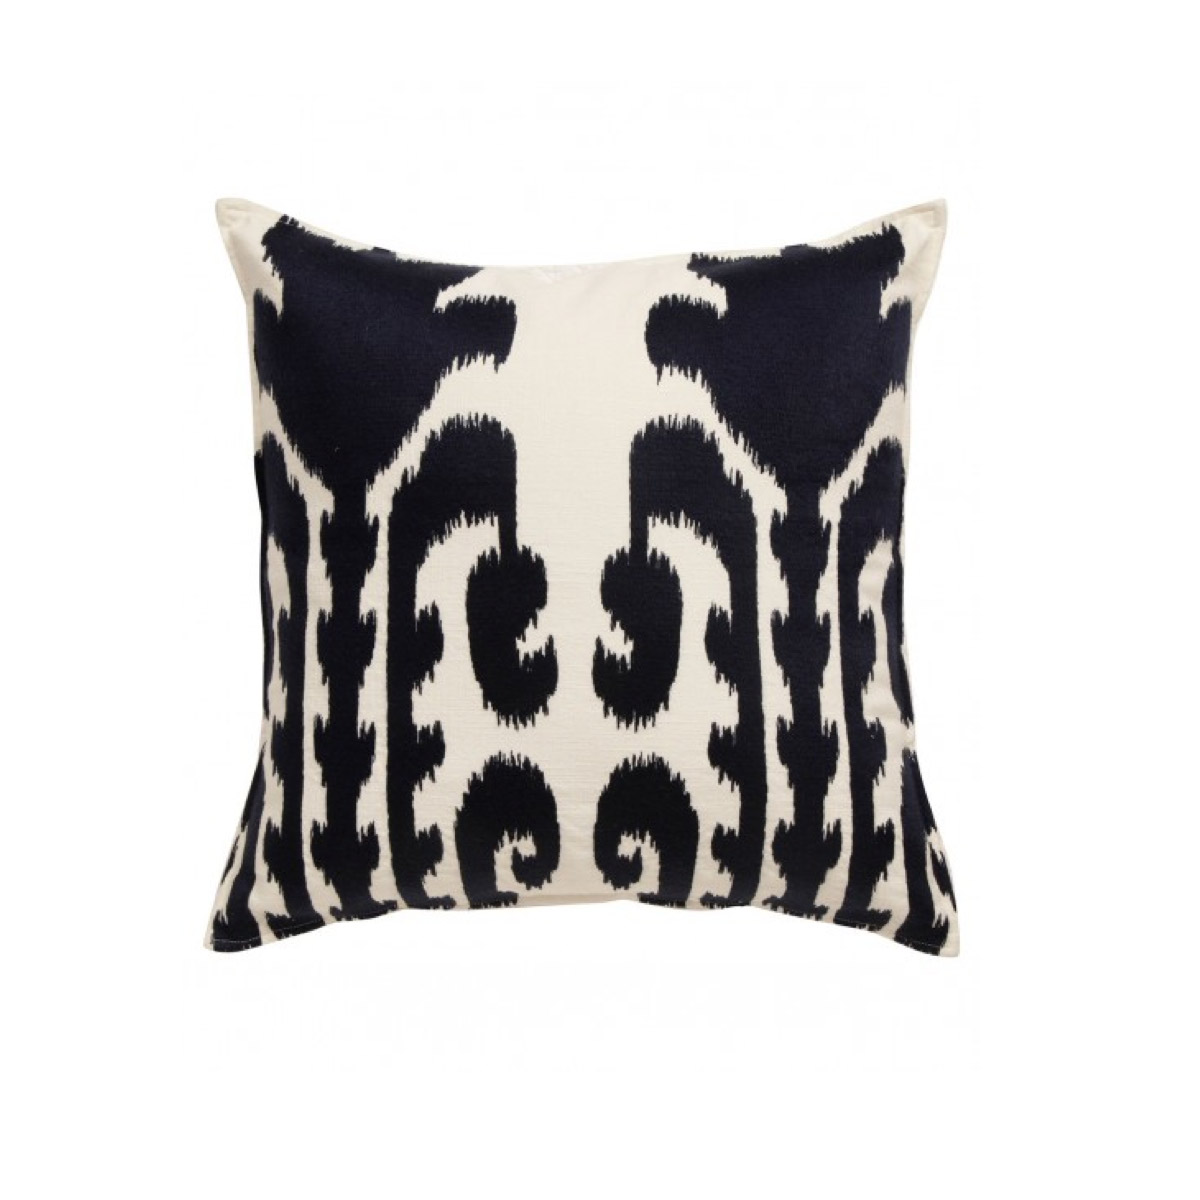 Masai Ikat cushion